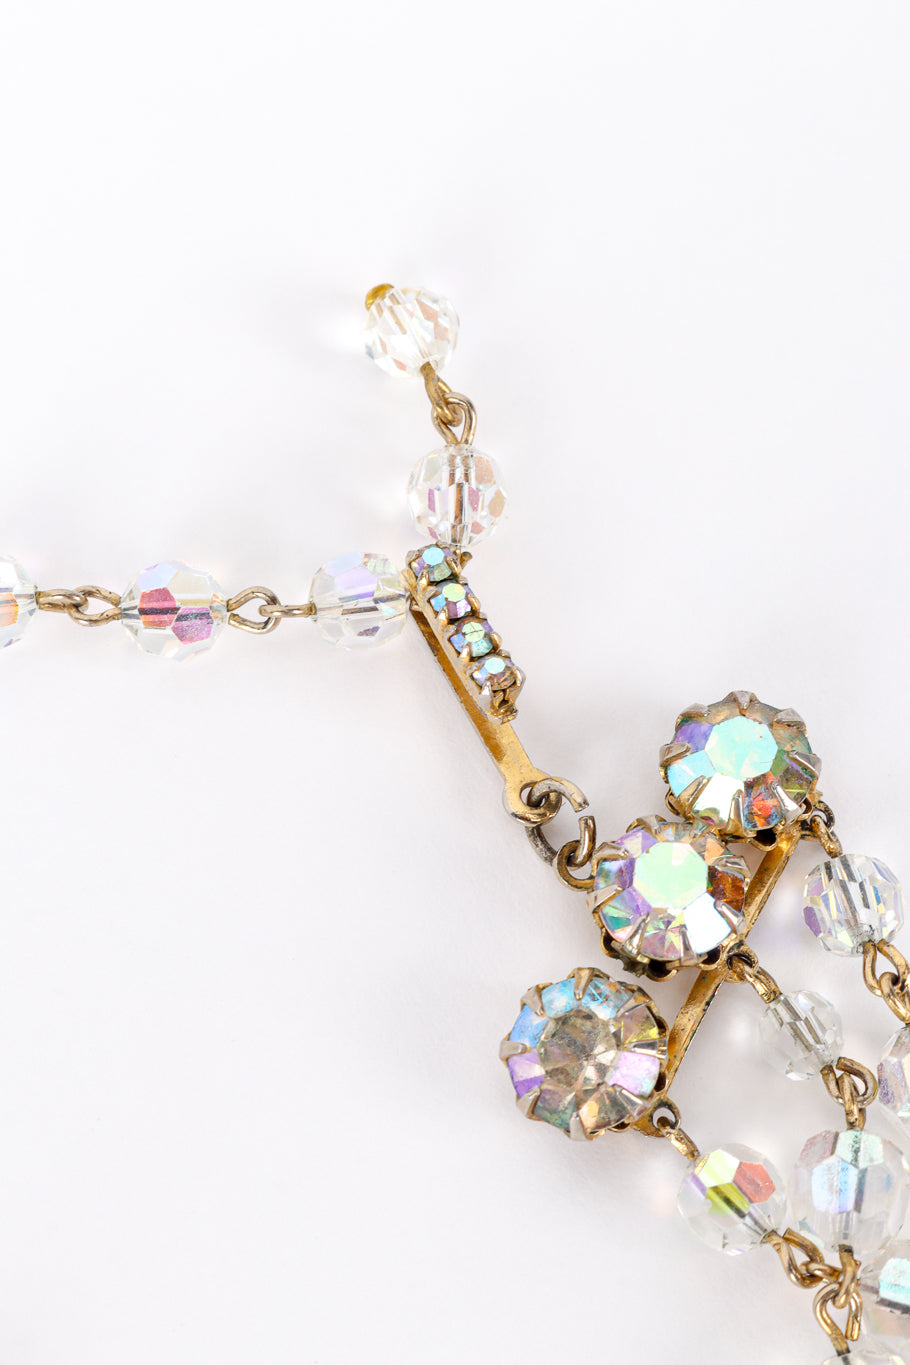 Vintage Aurora Crystal Festoon Necklace hook clasp closeup @recess la